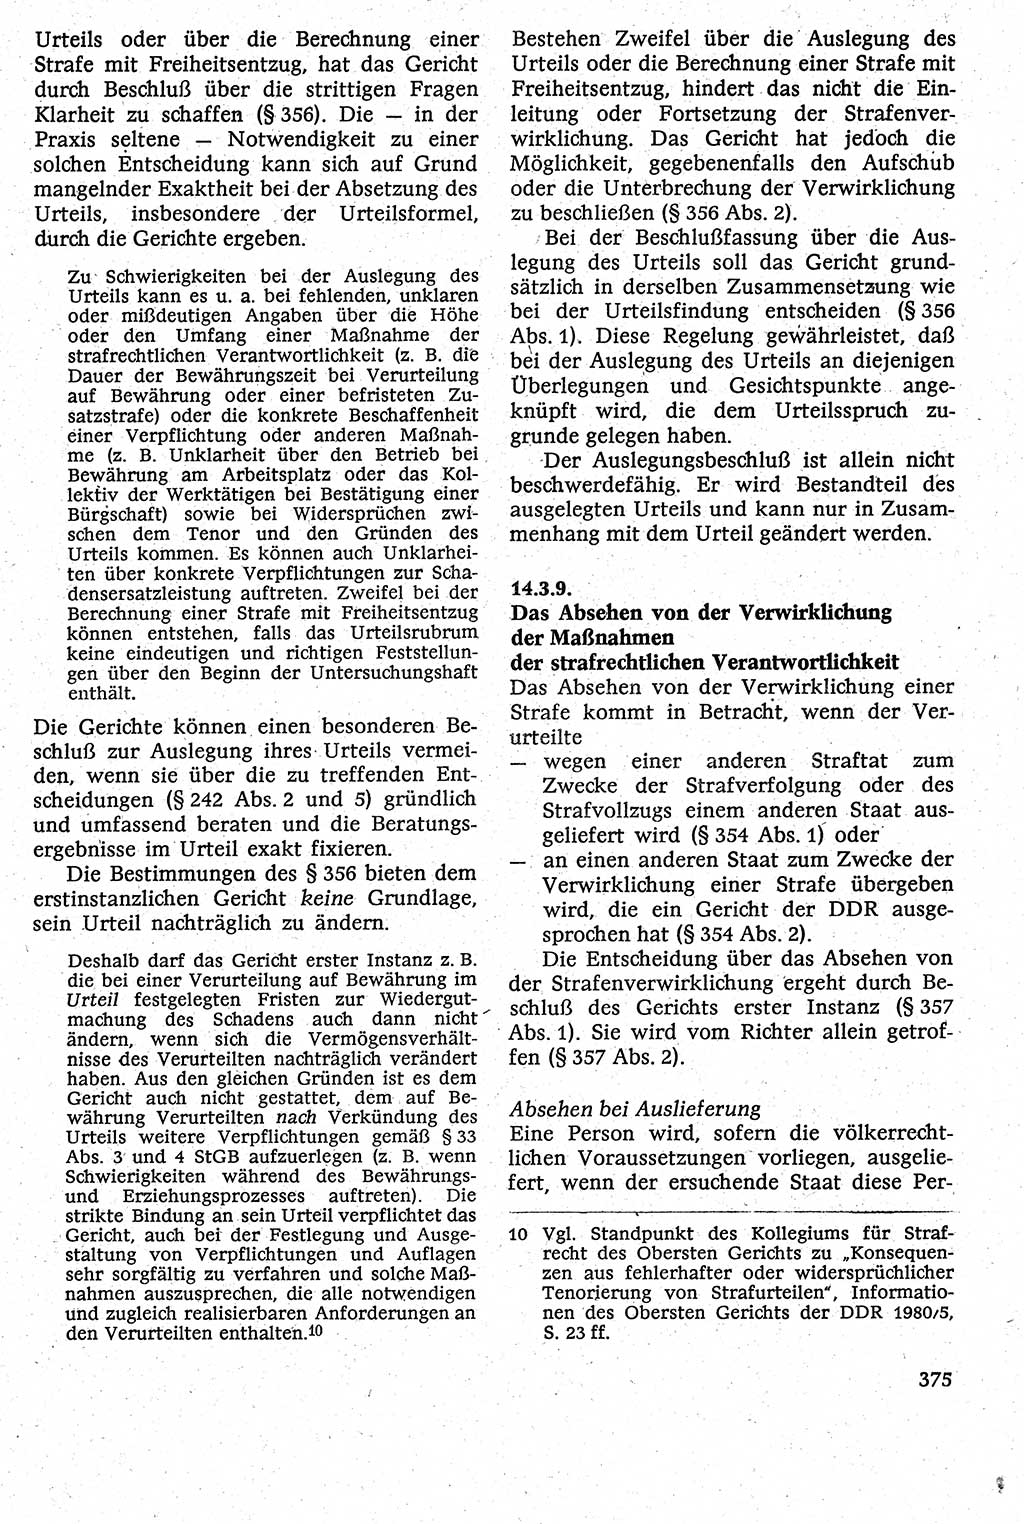 Strafverfahrensrecht [Deutsche Demokratische Republik (DDR)], Lehrbuch 1982, Seite 375 (Strafverf.-R. DDR Lb. 1982, S. 375)